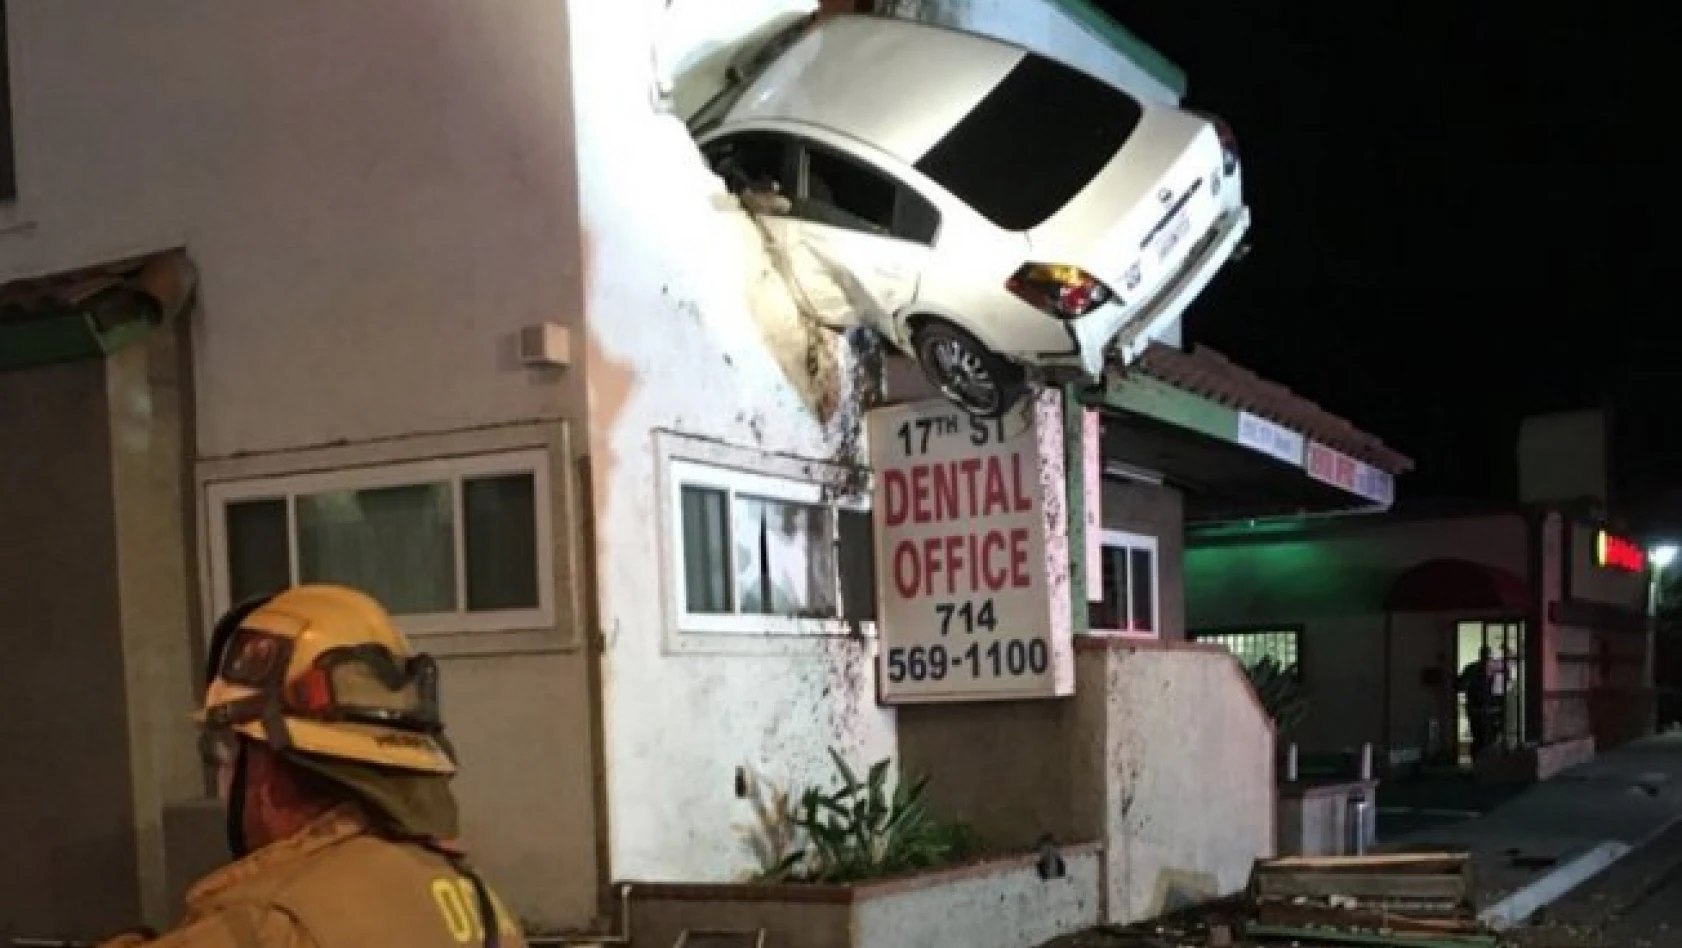 ABD'de aşırı hızla giden araç binanın ikinci katına girdi 